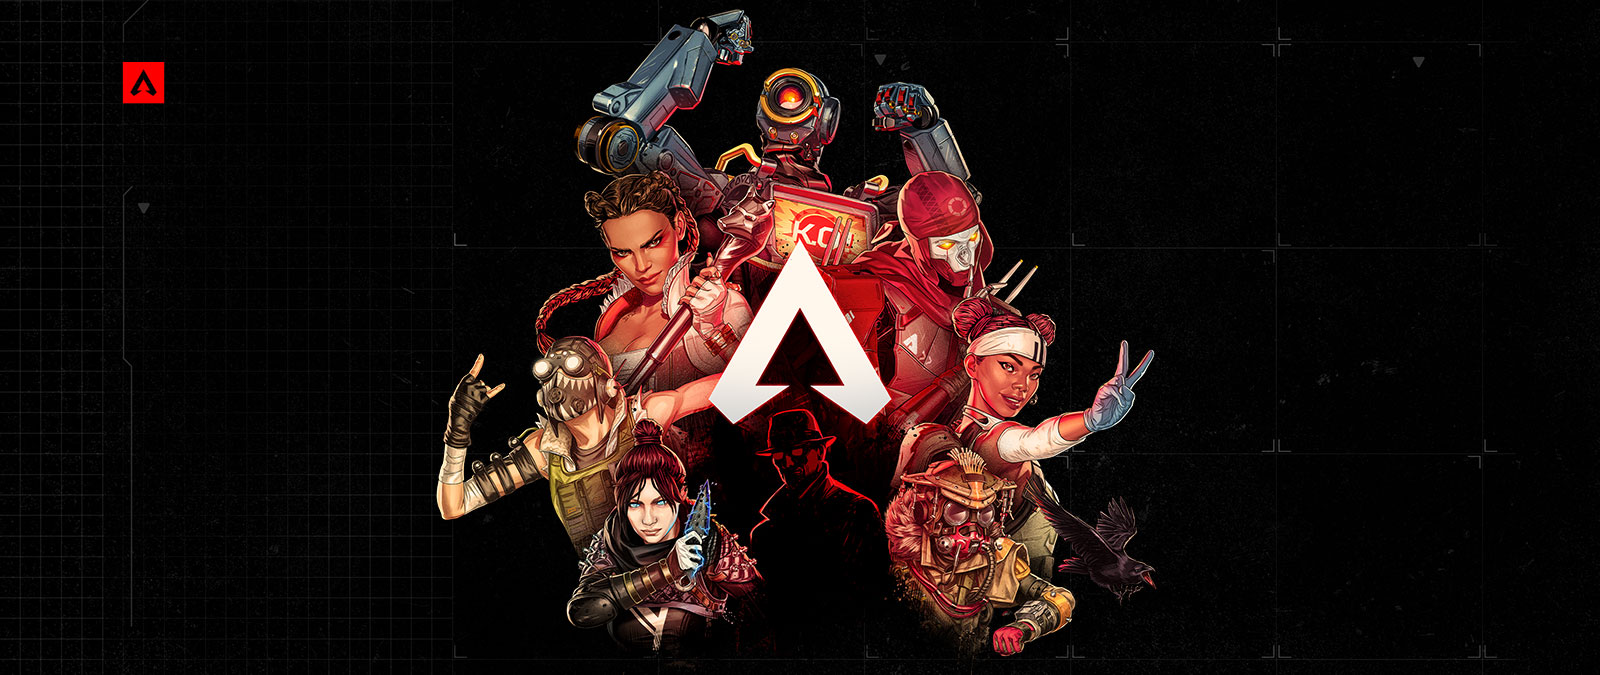 En samling Apex Legends-karaktärer poserar självsäkert runt spelets logotyp.